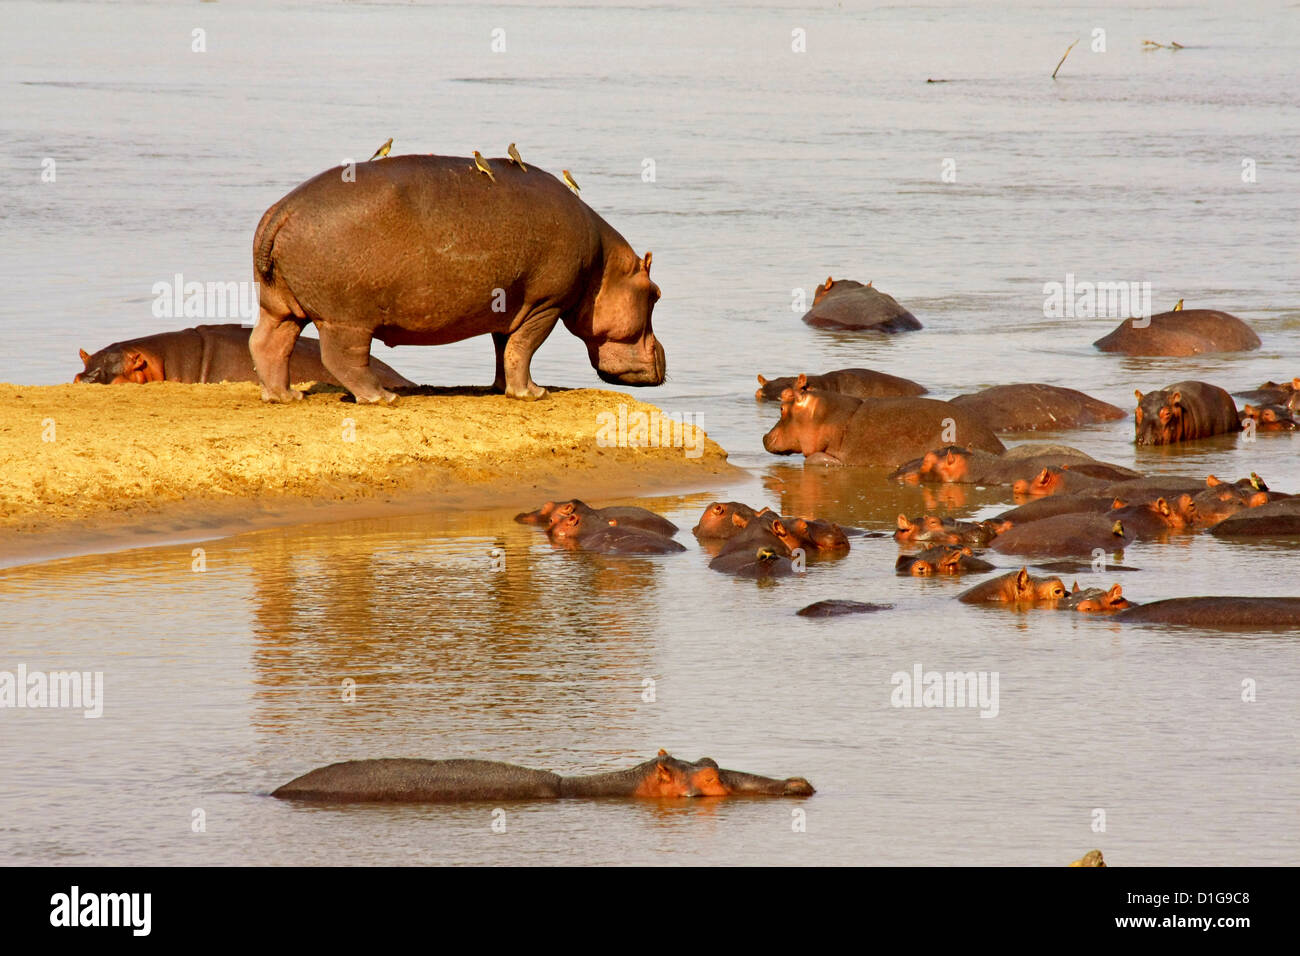 Una hembra adulta cuidando una guardería de bebé hipopótamos Foto de stock